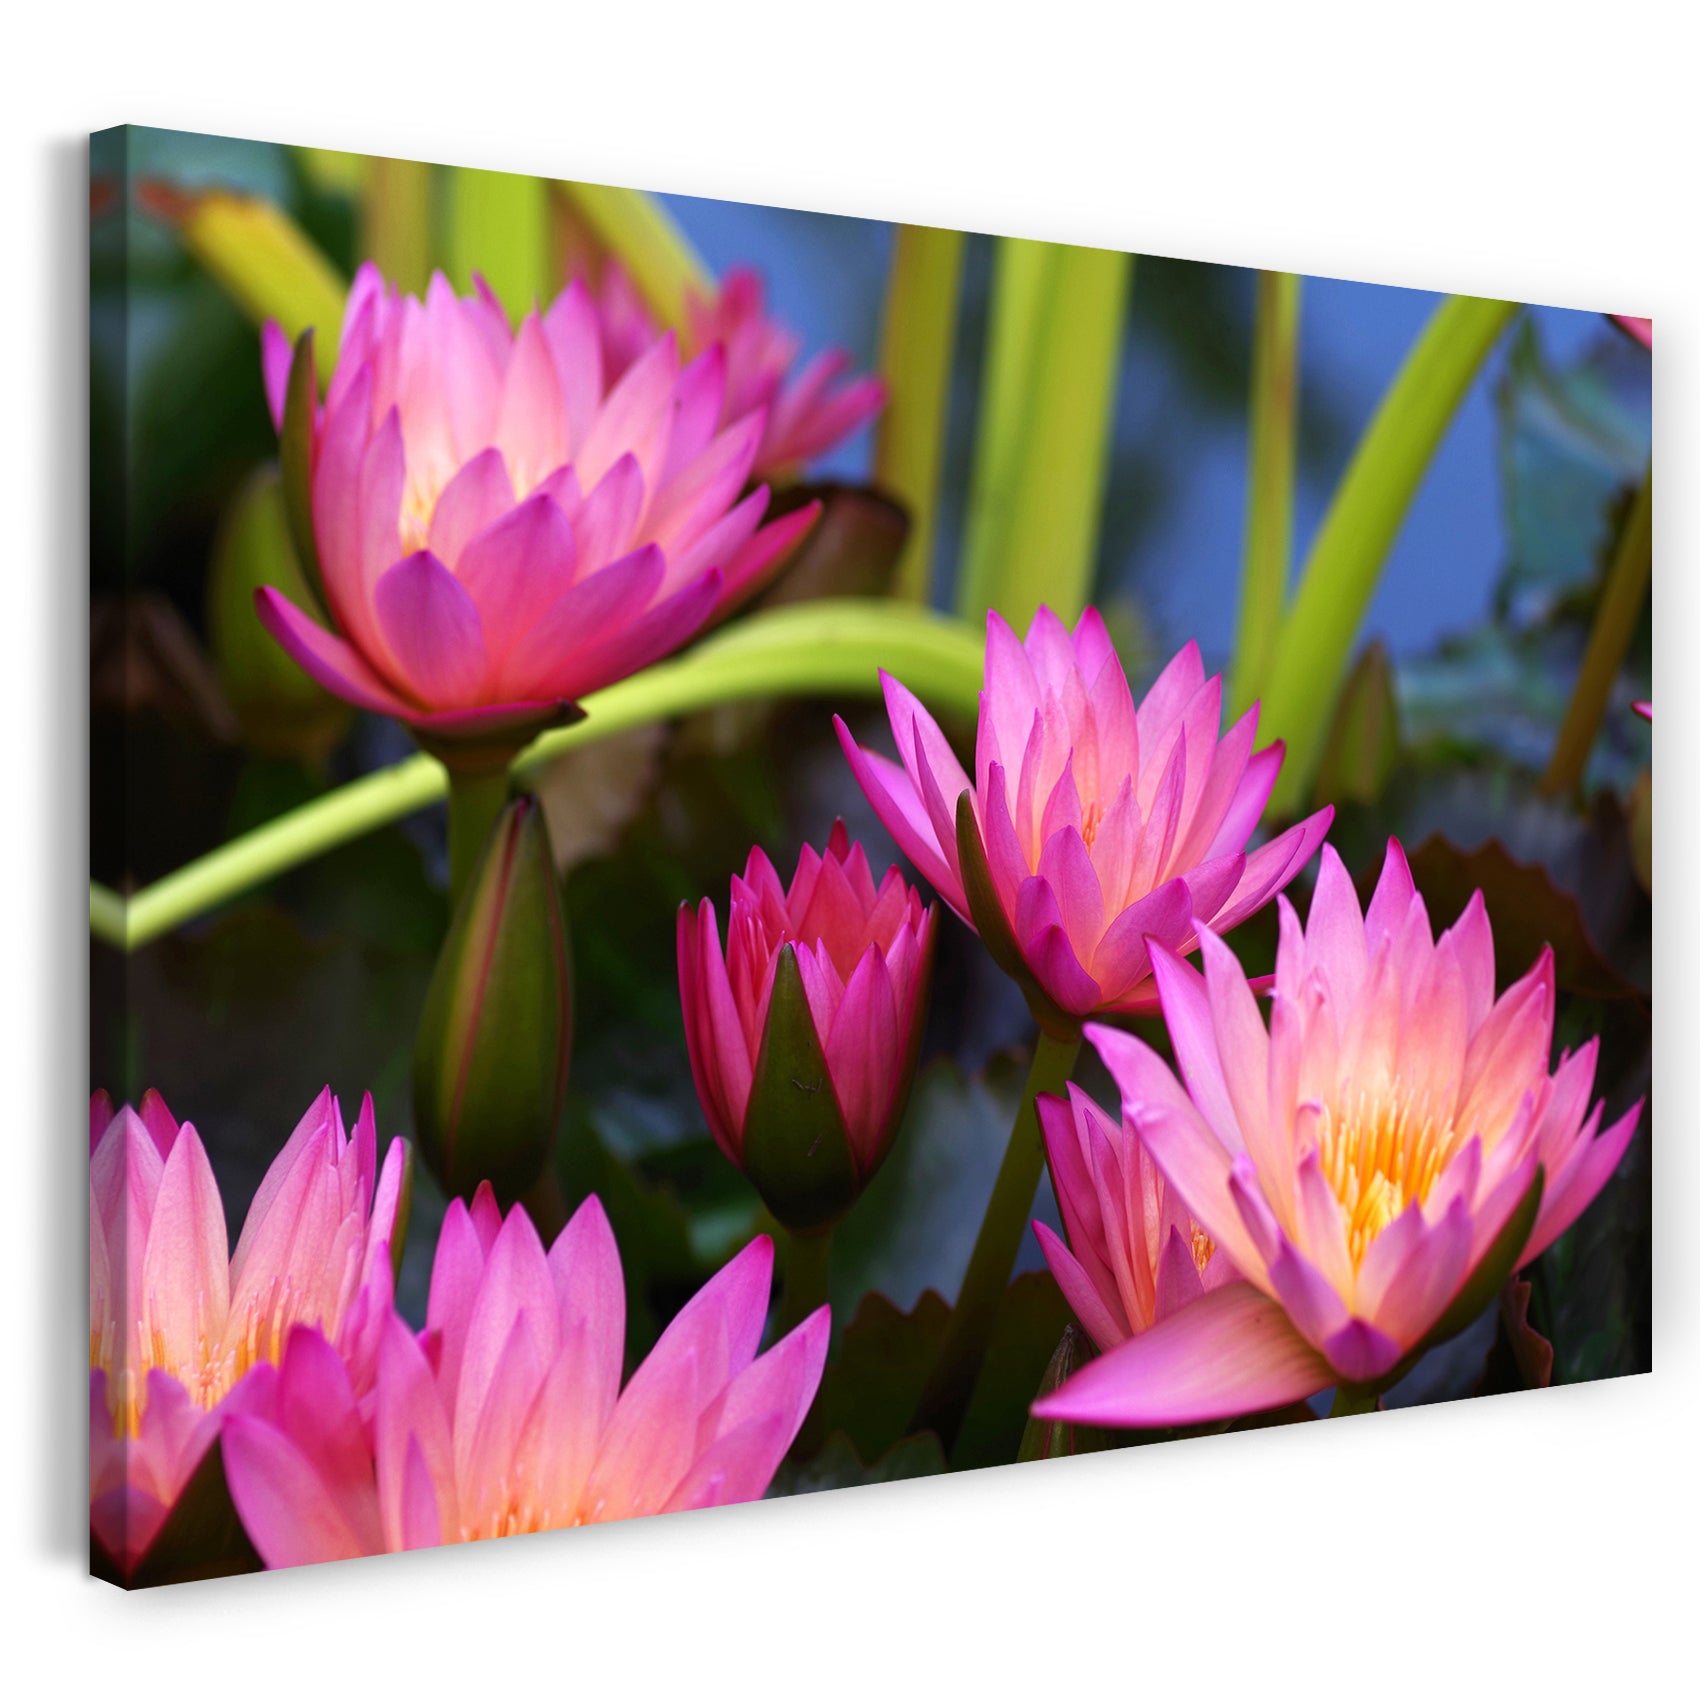 Leinwandbild Blumenbilder Blumenfotos fünf Seerosen mit pinken Blättern